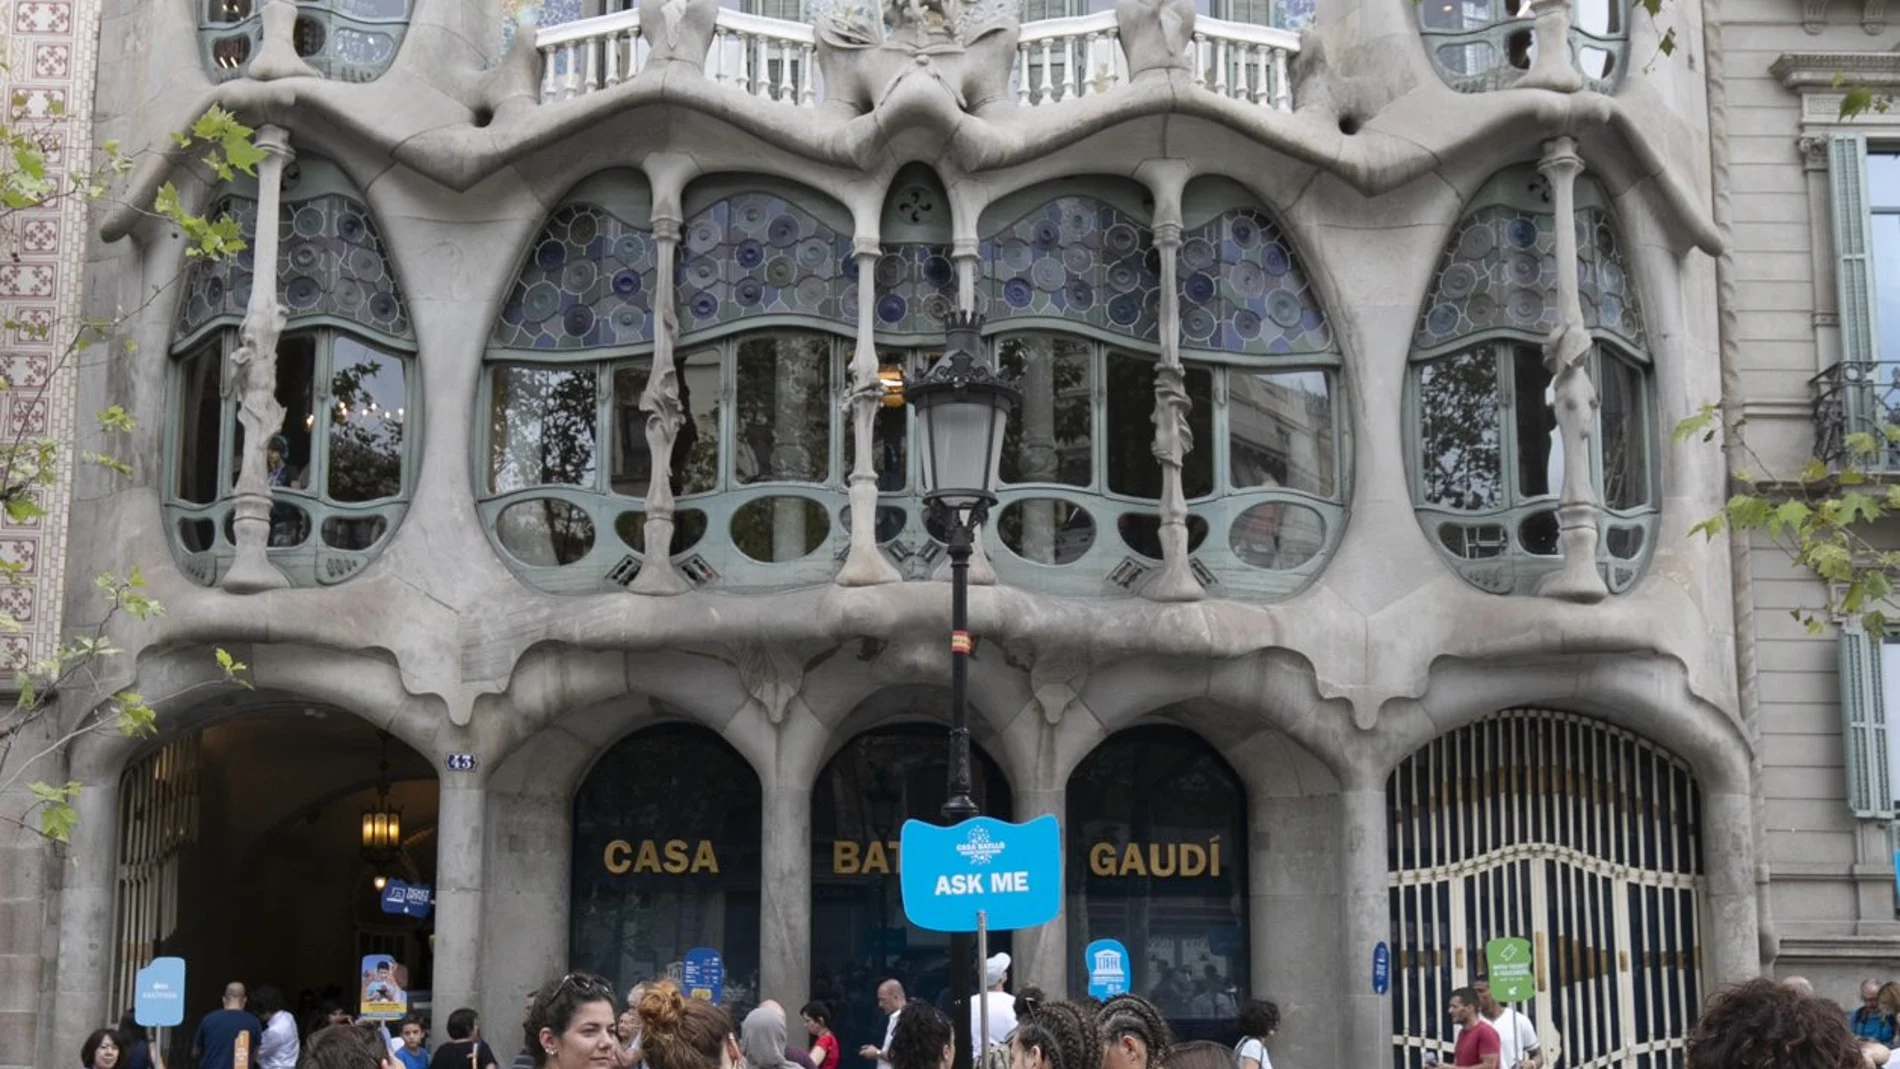 La Casa Batlló es uno de los grandes focos turísticos de Barcelona